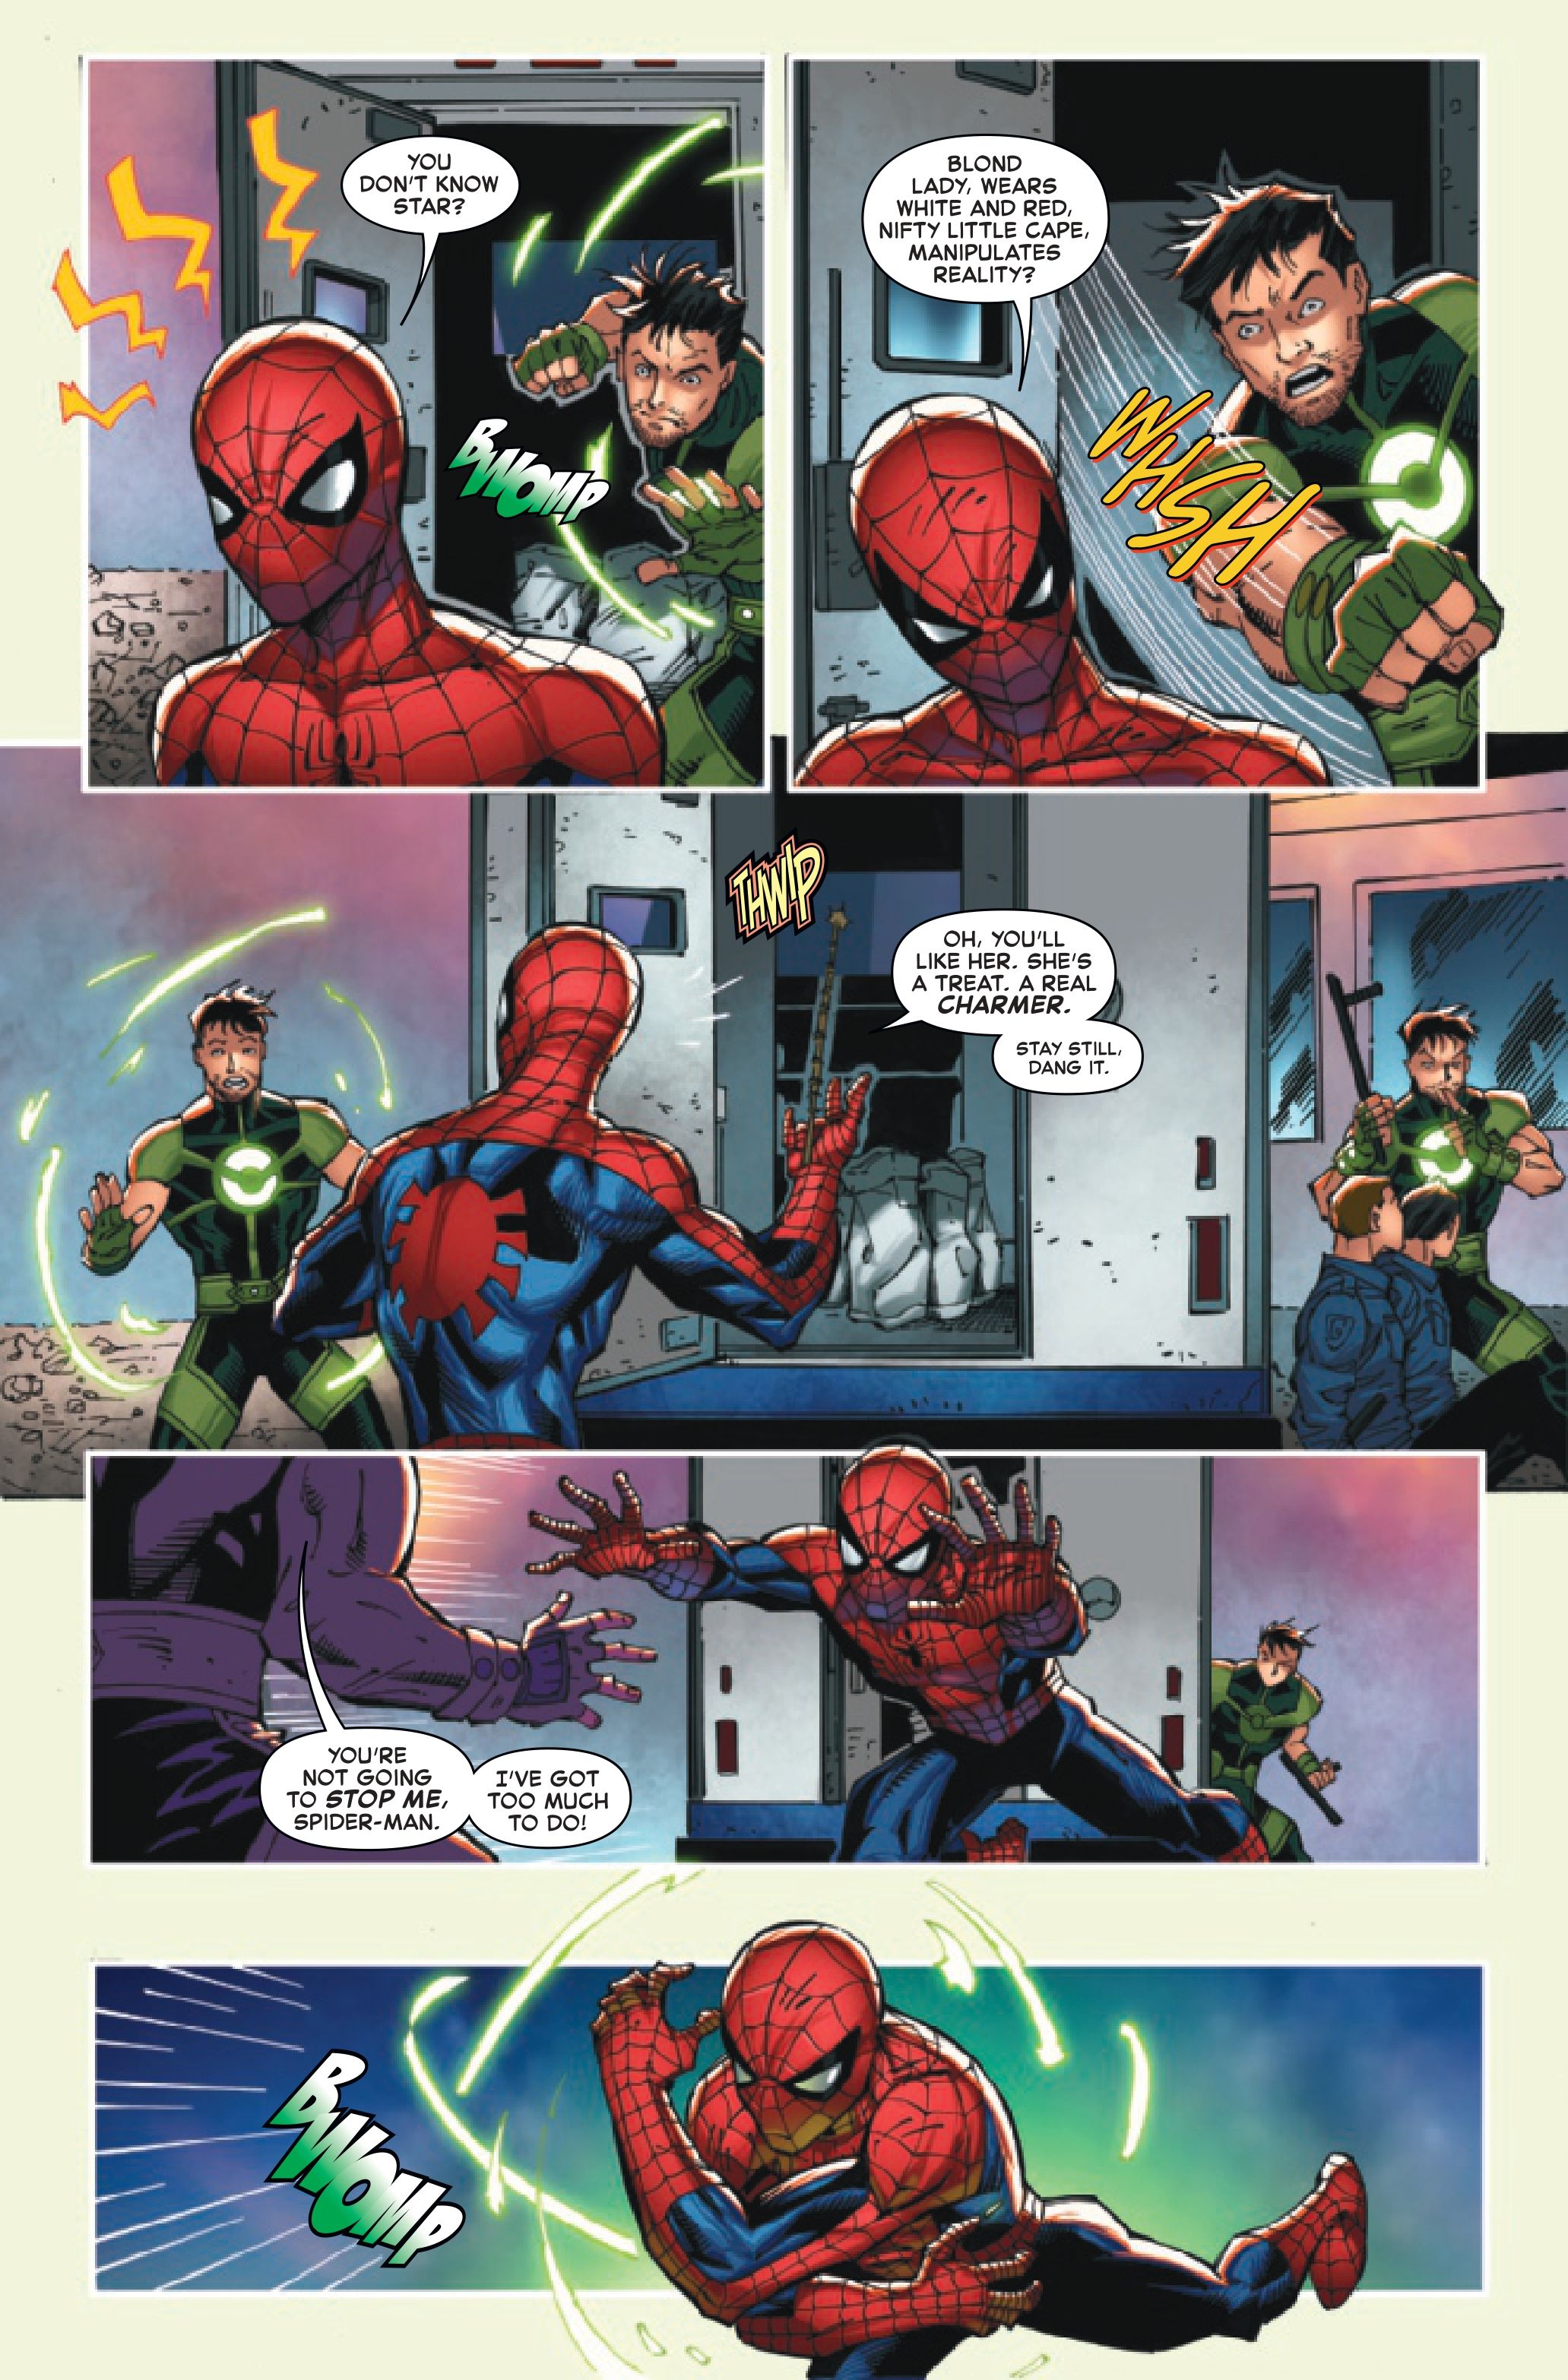 ЭКСКЛЮЗИВ: Человек-паук должен спасти обладателя Камня бесконечности от Таноса